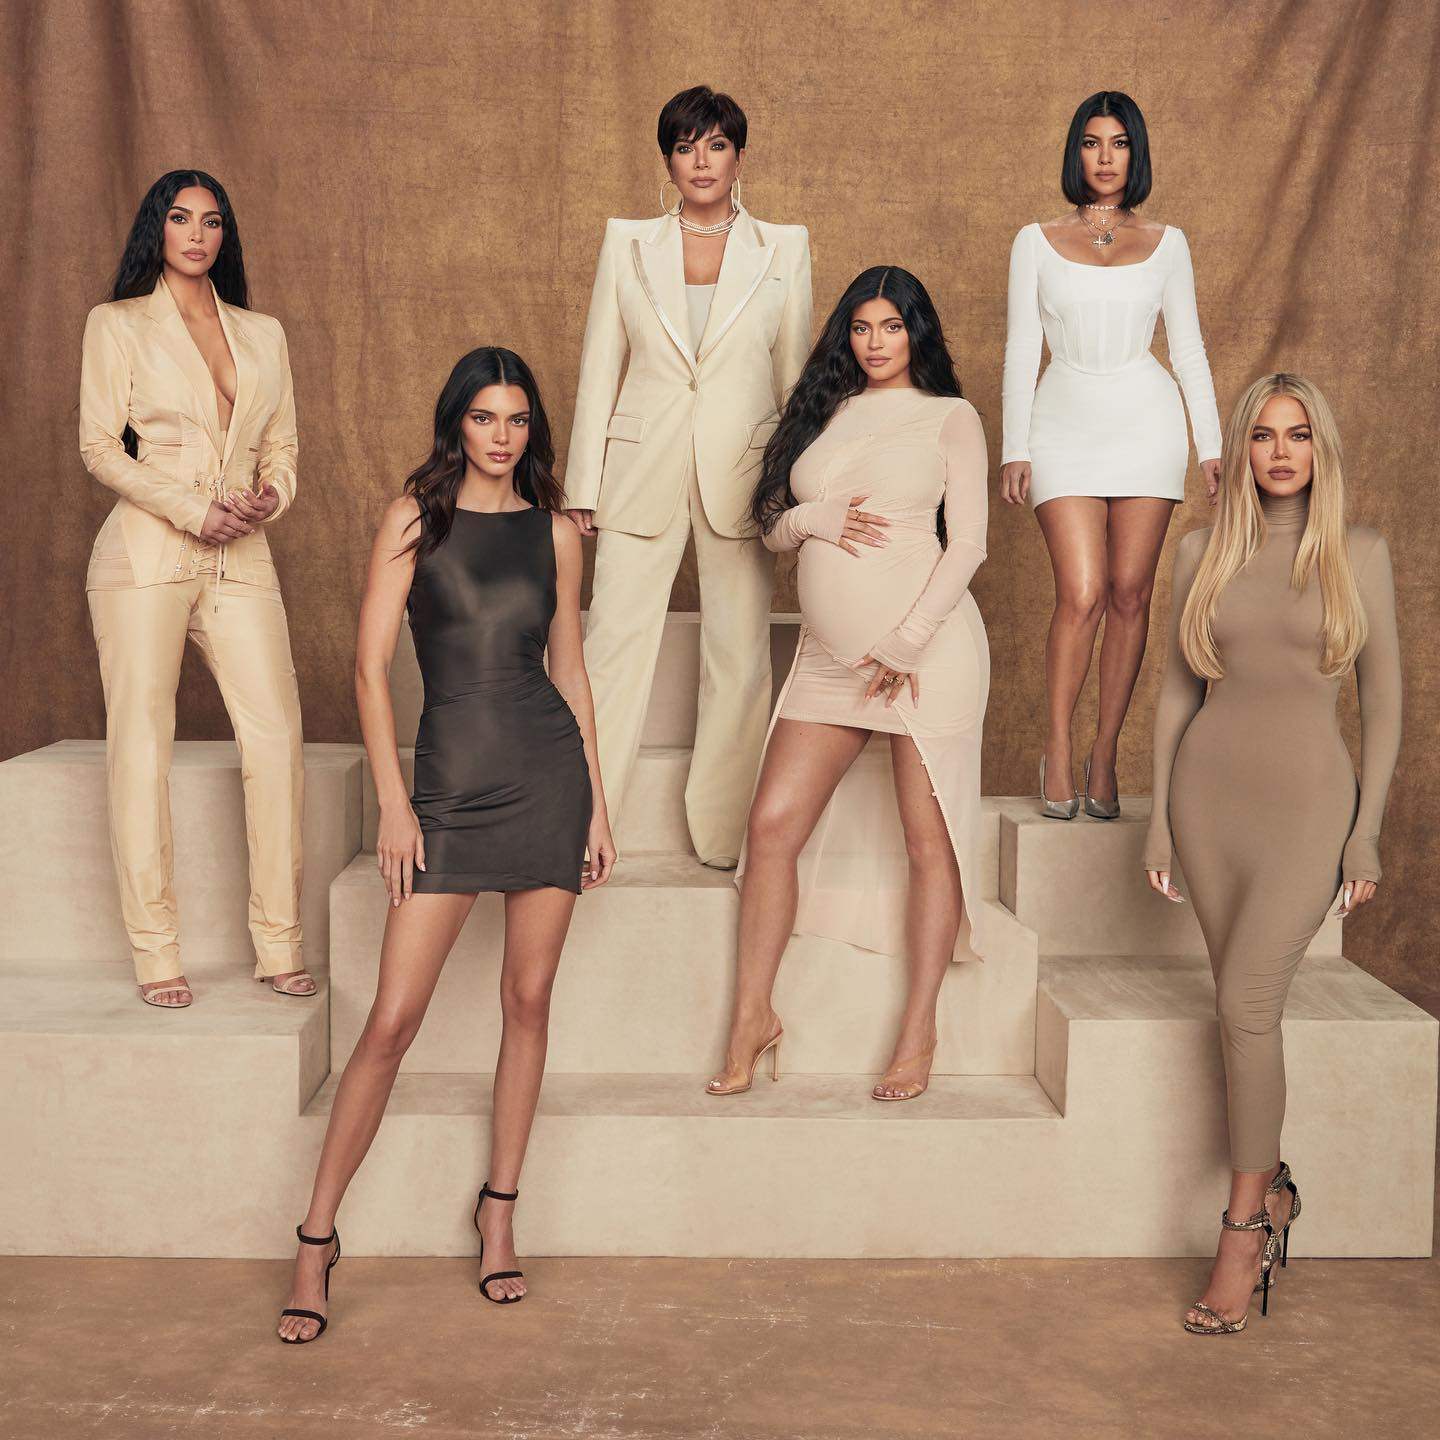 Kylie Jenner, Kourtney Kardashian and Kloe Kardashian Rock Waist